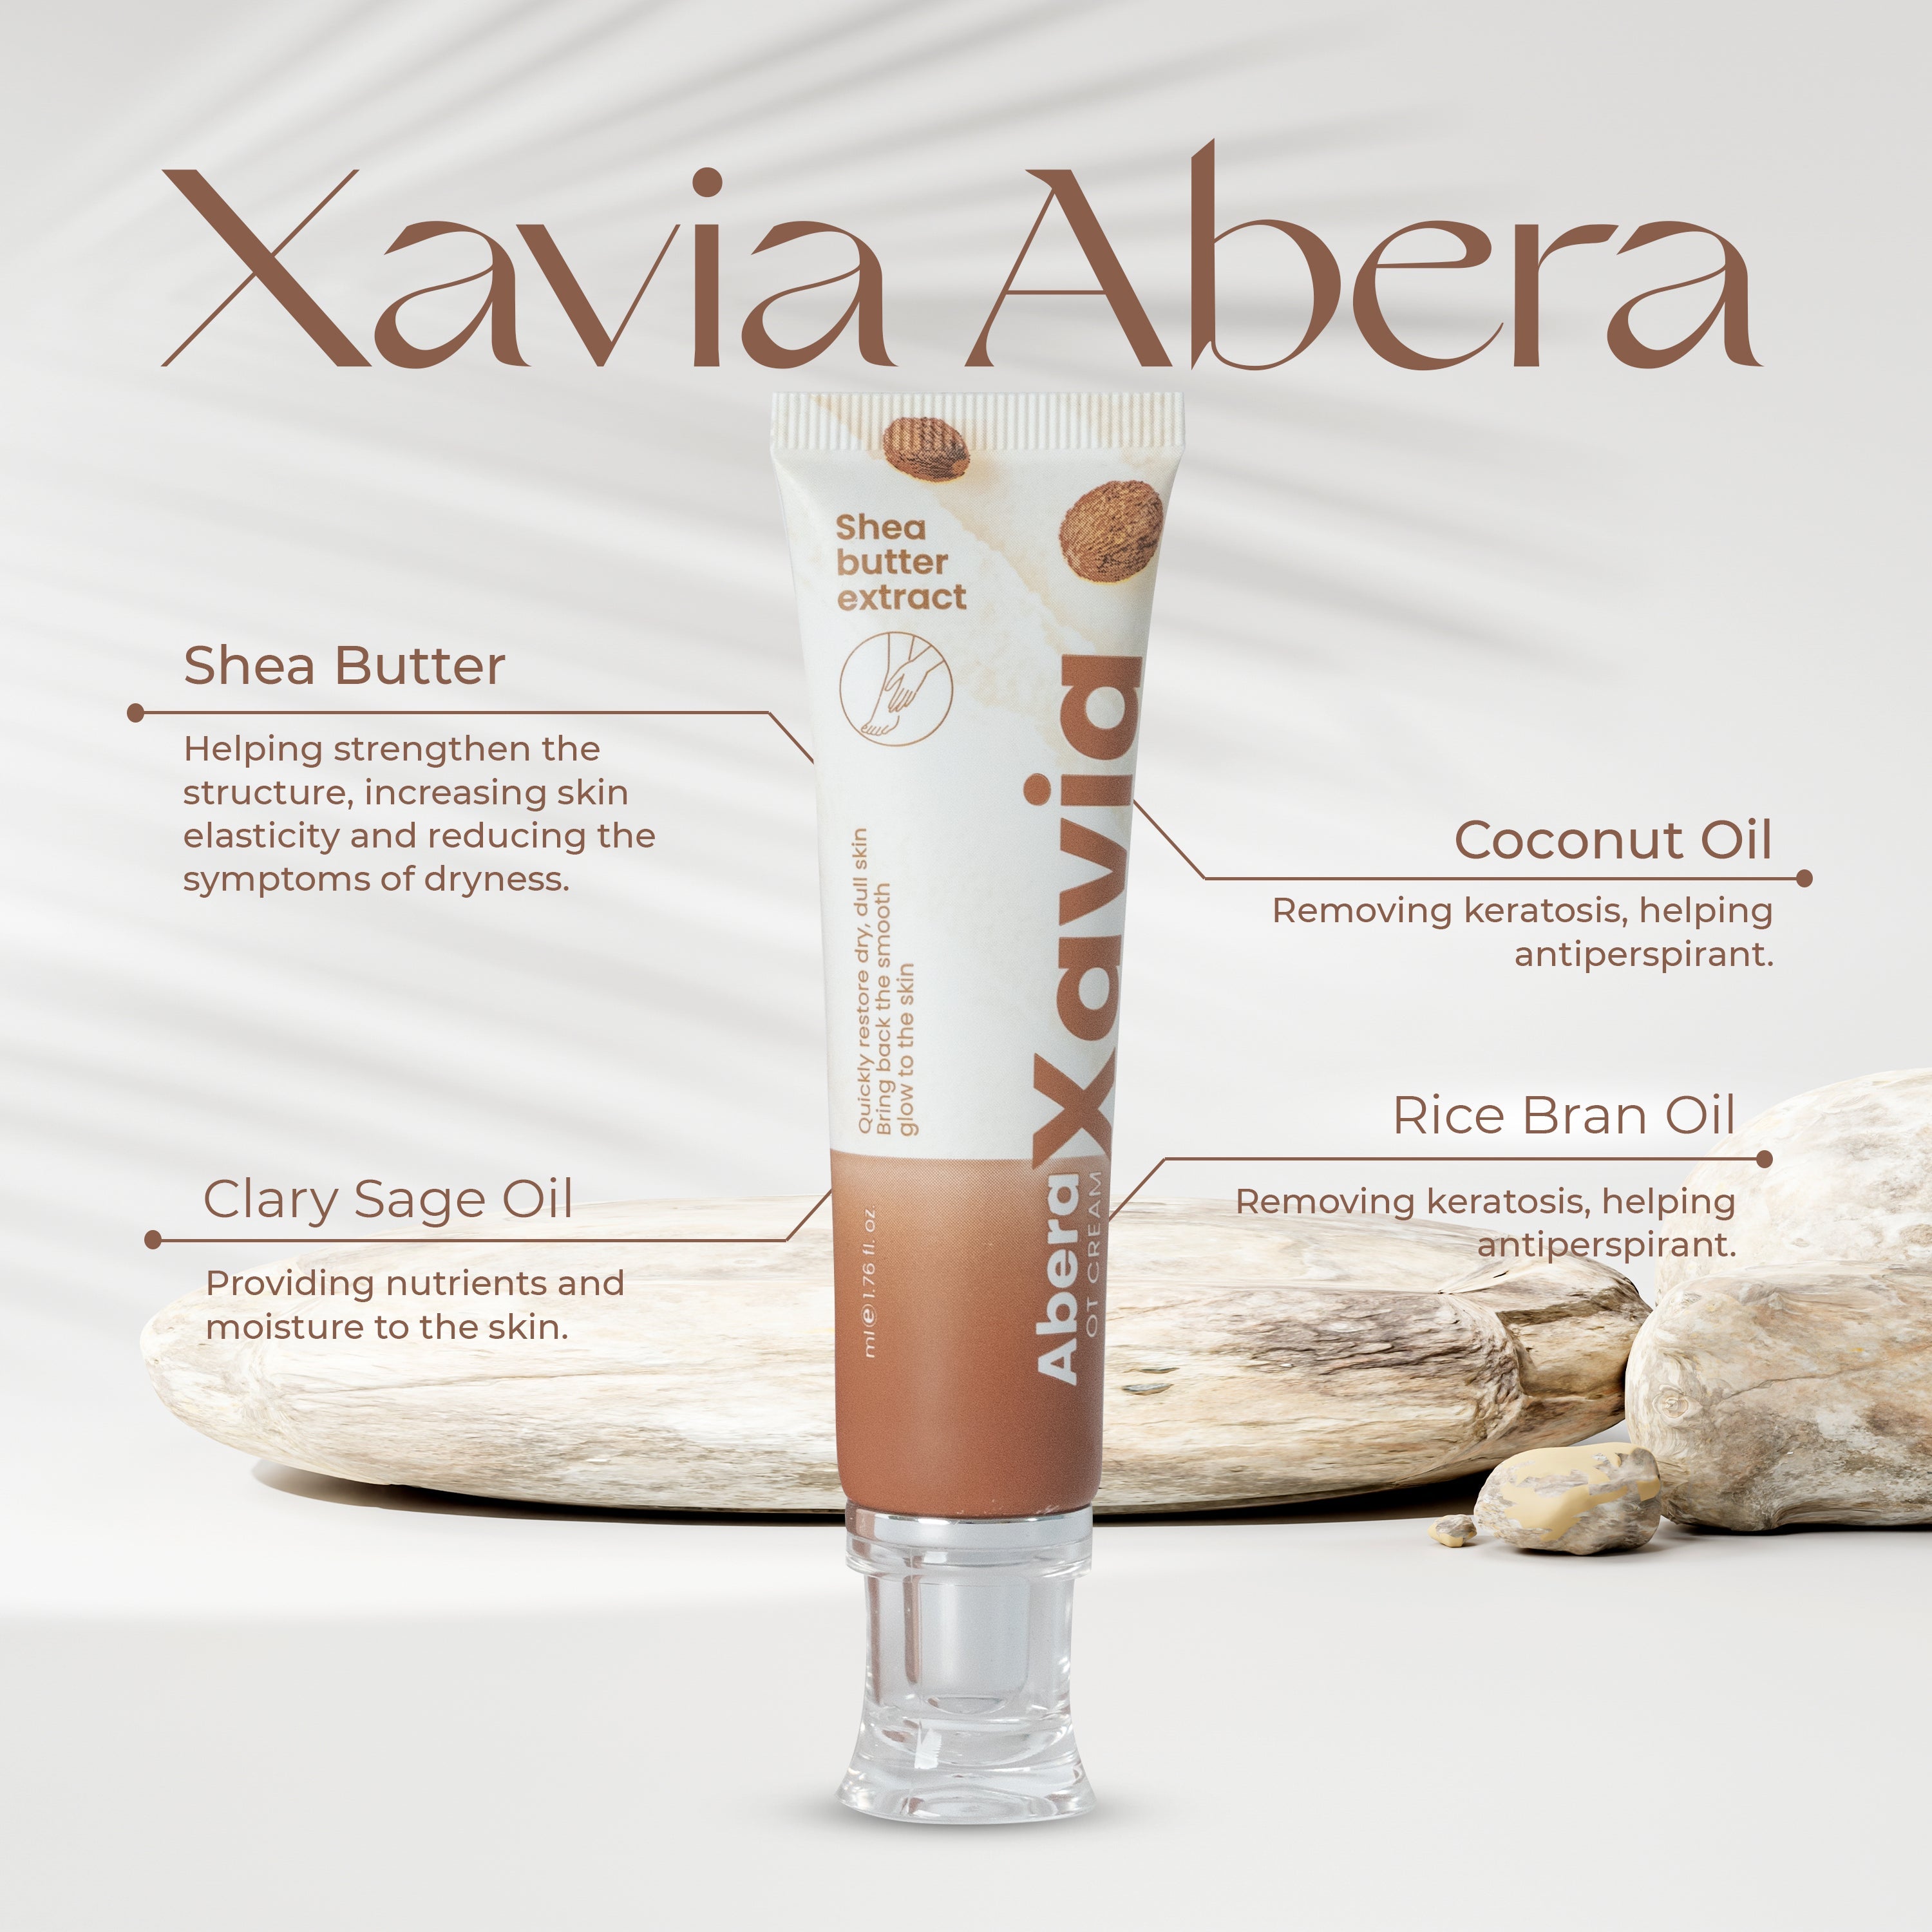 Xavia Cracked Heel Cream - Foot Care, Repairing Dry Cracked Heel, Moisturizing and Regenerating New Skin